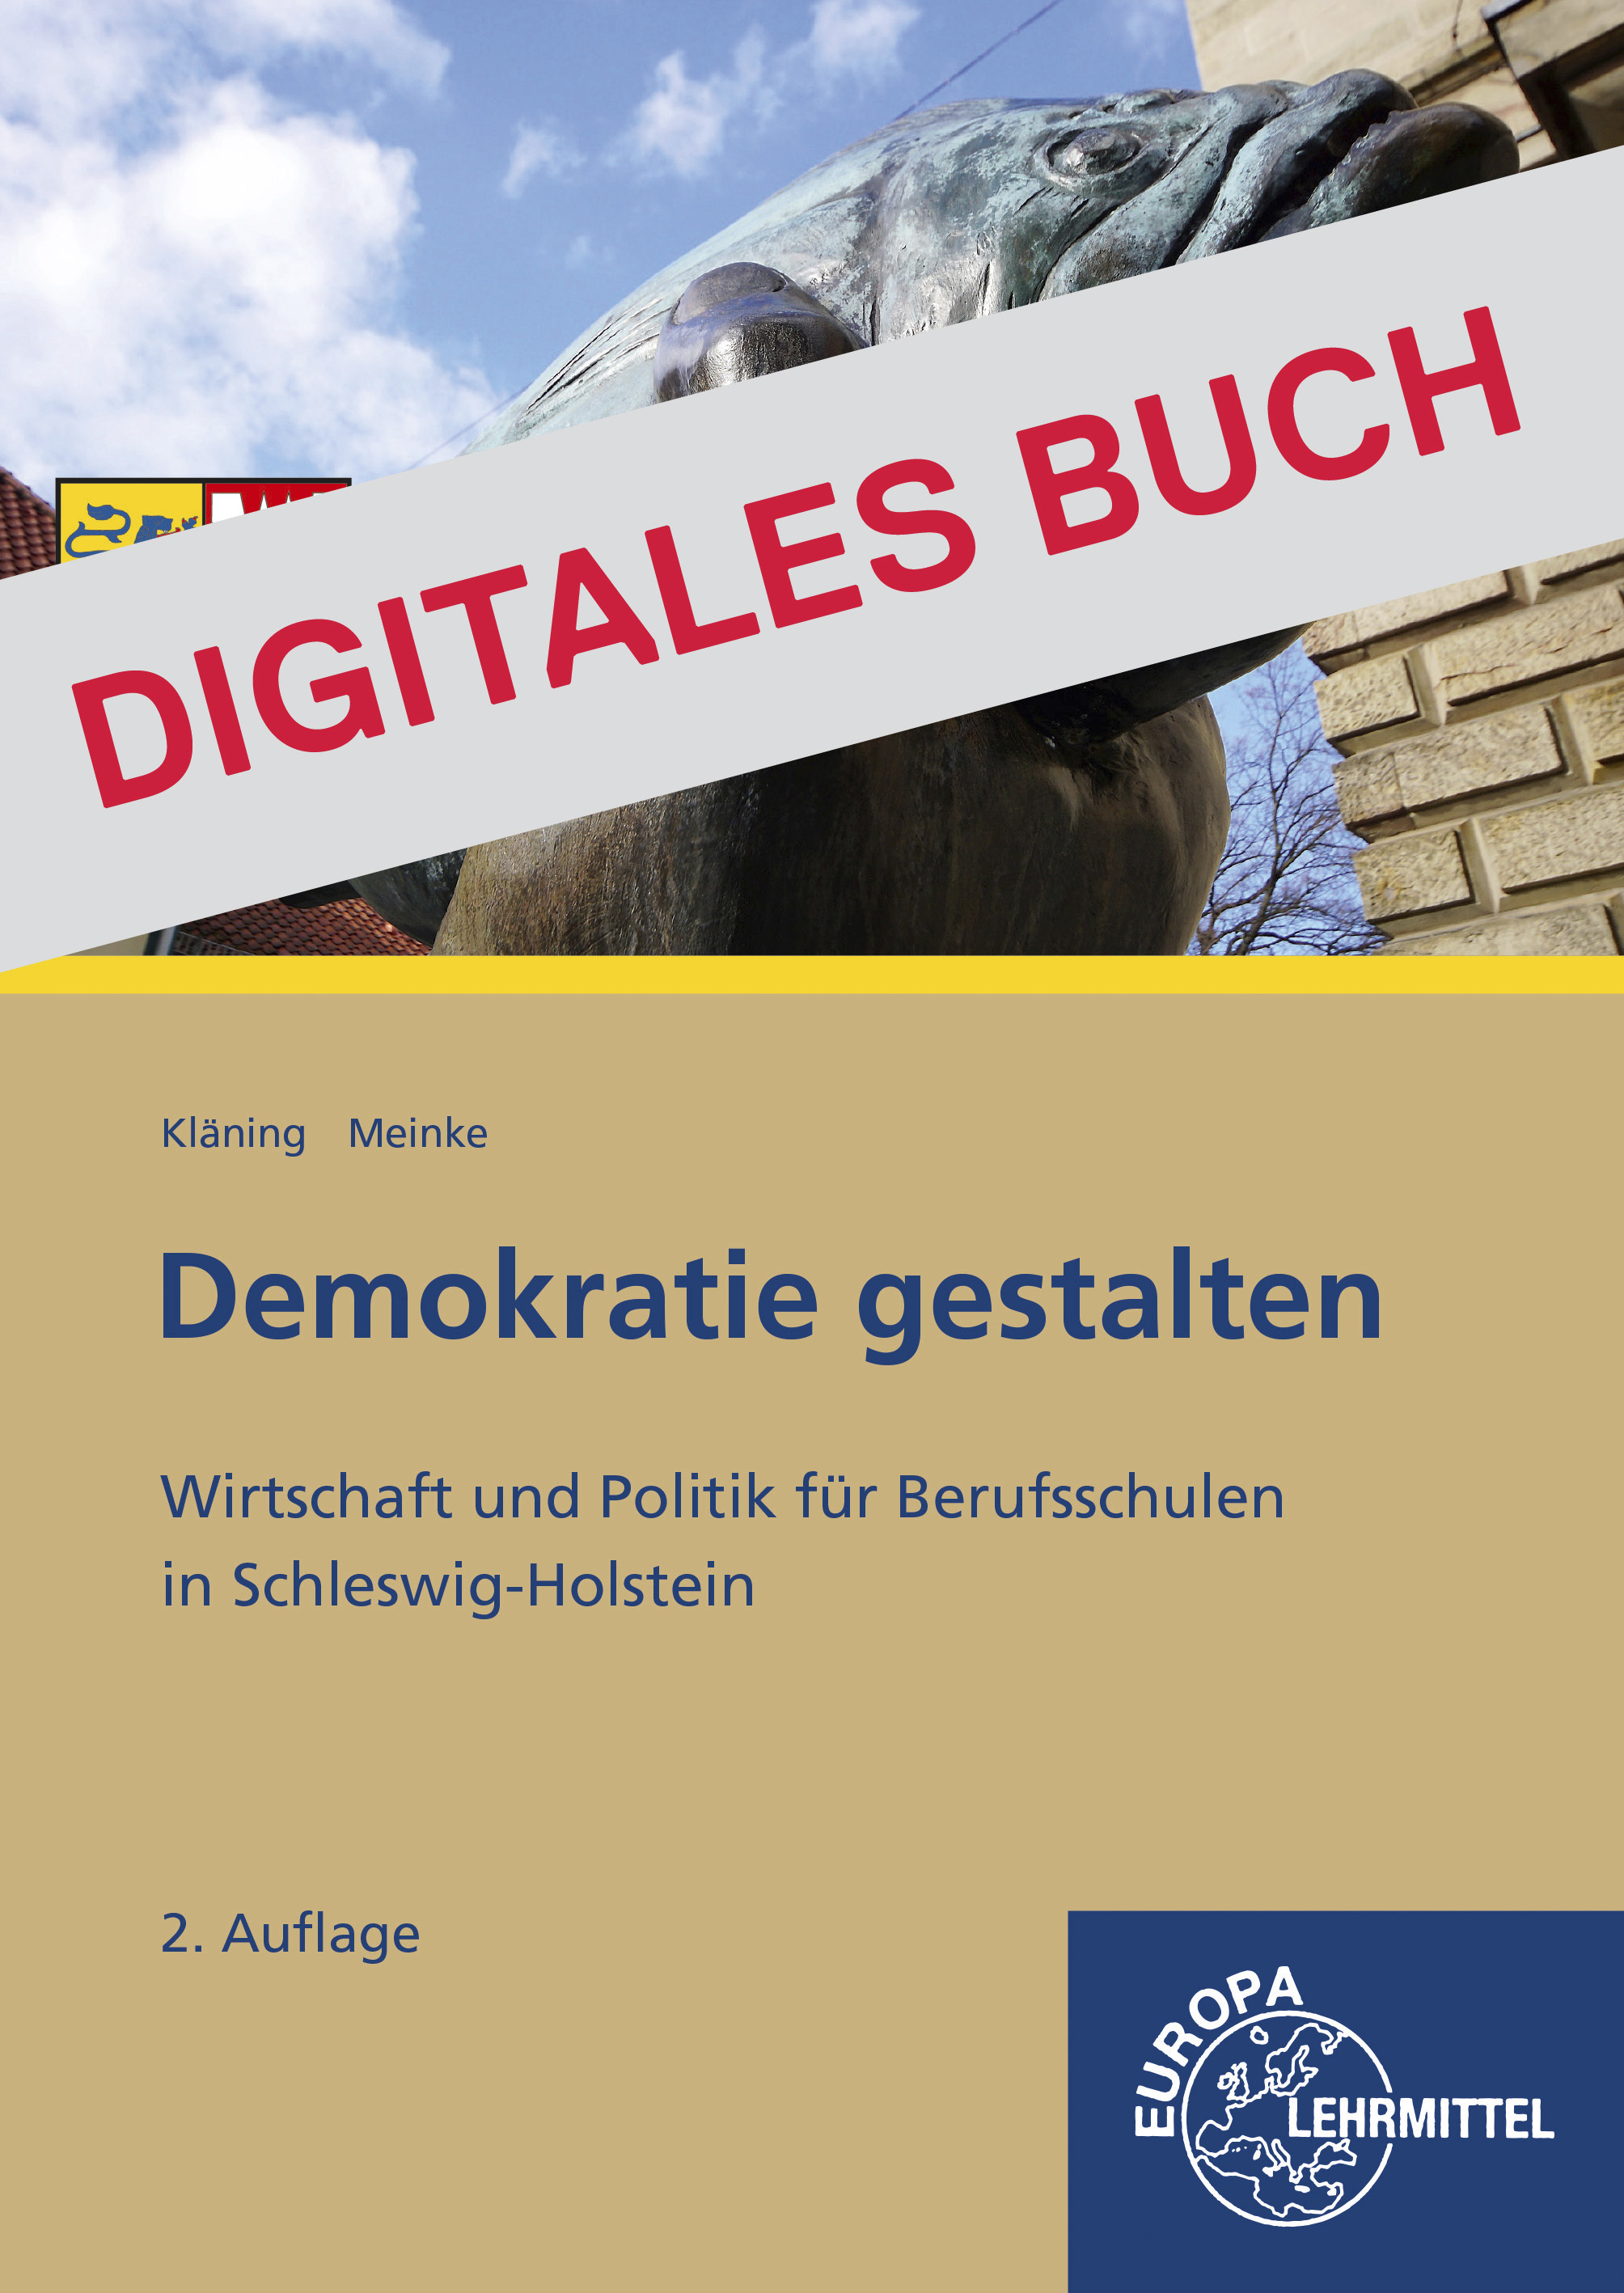 Demokratie gestalten - Schleswig-Holstein - Digitales Buch